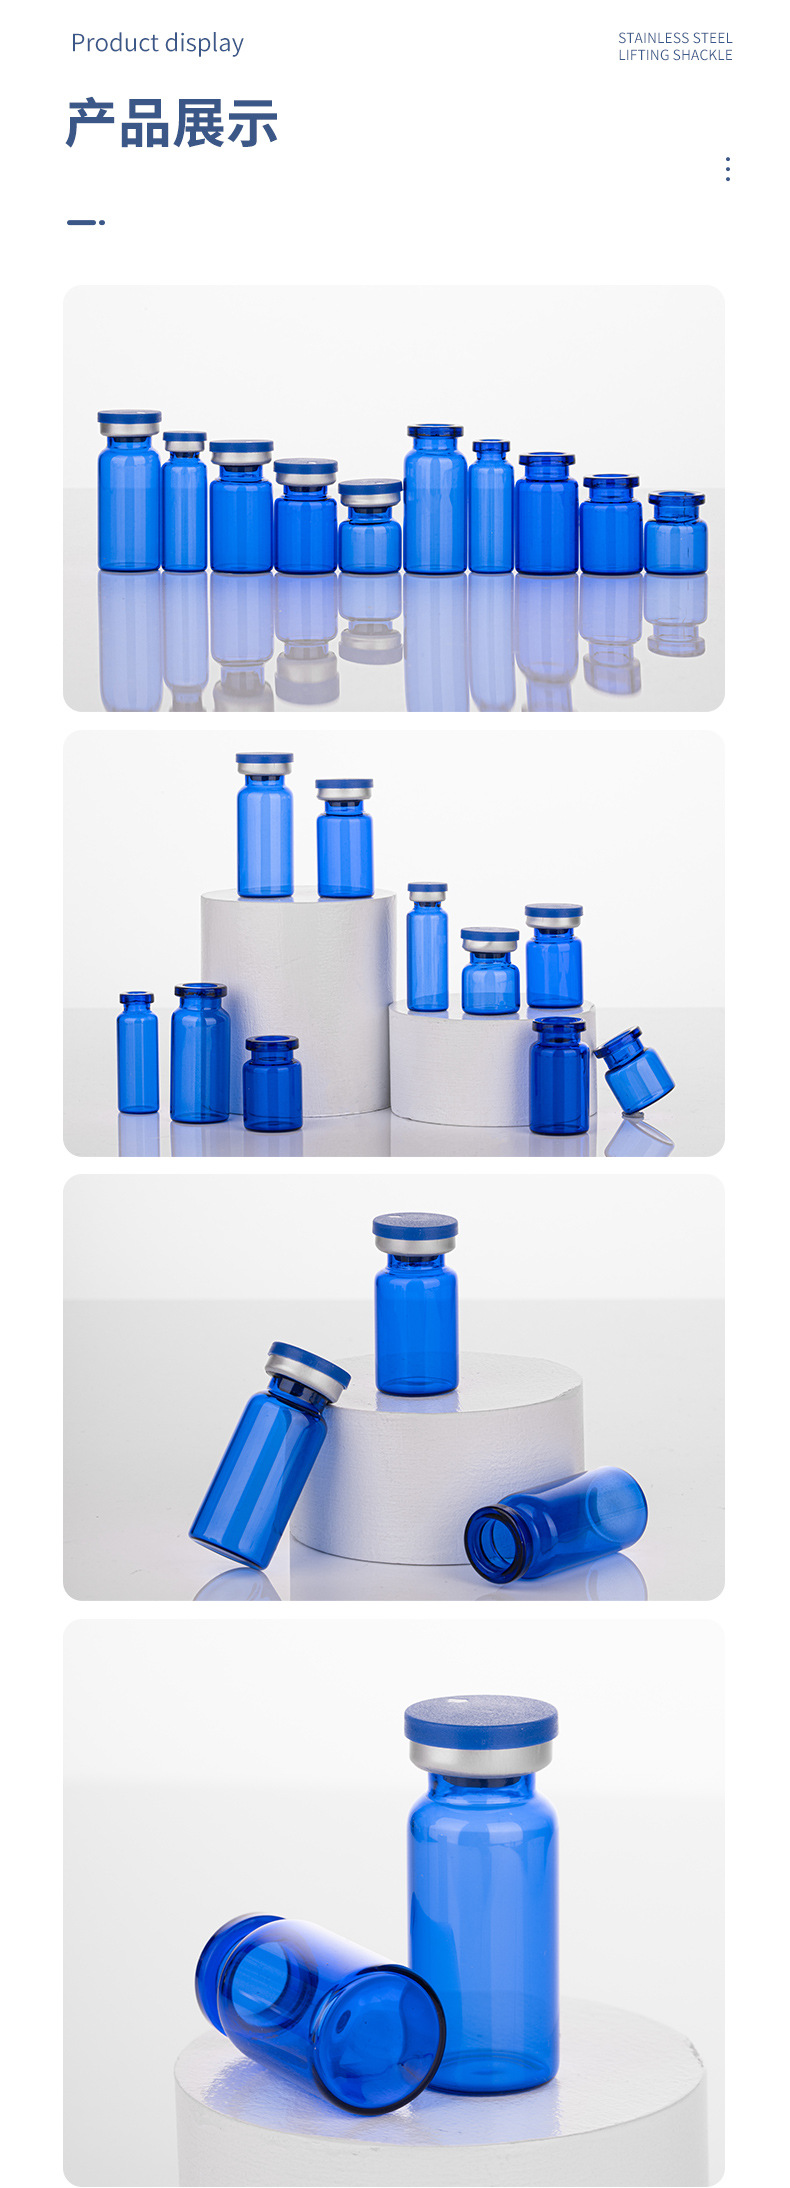 蓝色管制瓶，蓝色拉管瓶，蓝色西林瓶，蓝色冻干粉瓶，钴蓝色精华液瓶，药用玻璃瓶，丹阳市云阳镇乐发v111加工厂